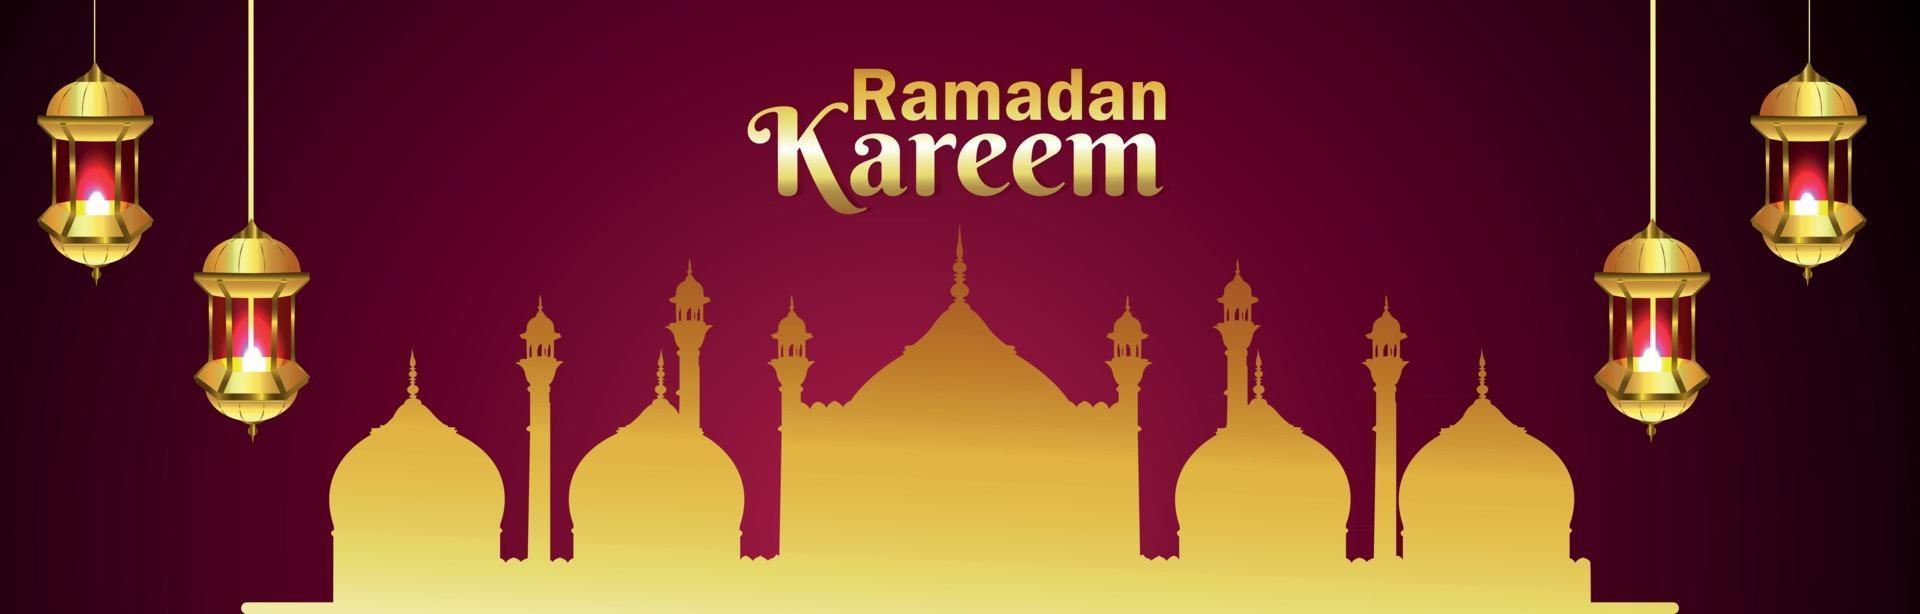 bannière de célébration ramadan kareem avec mosquée vecteur